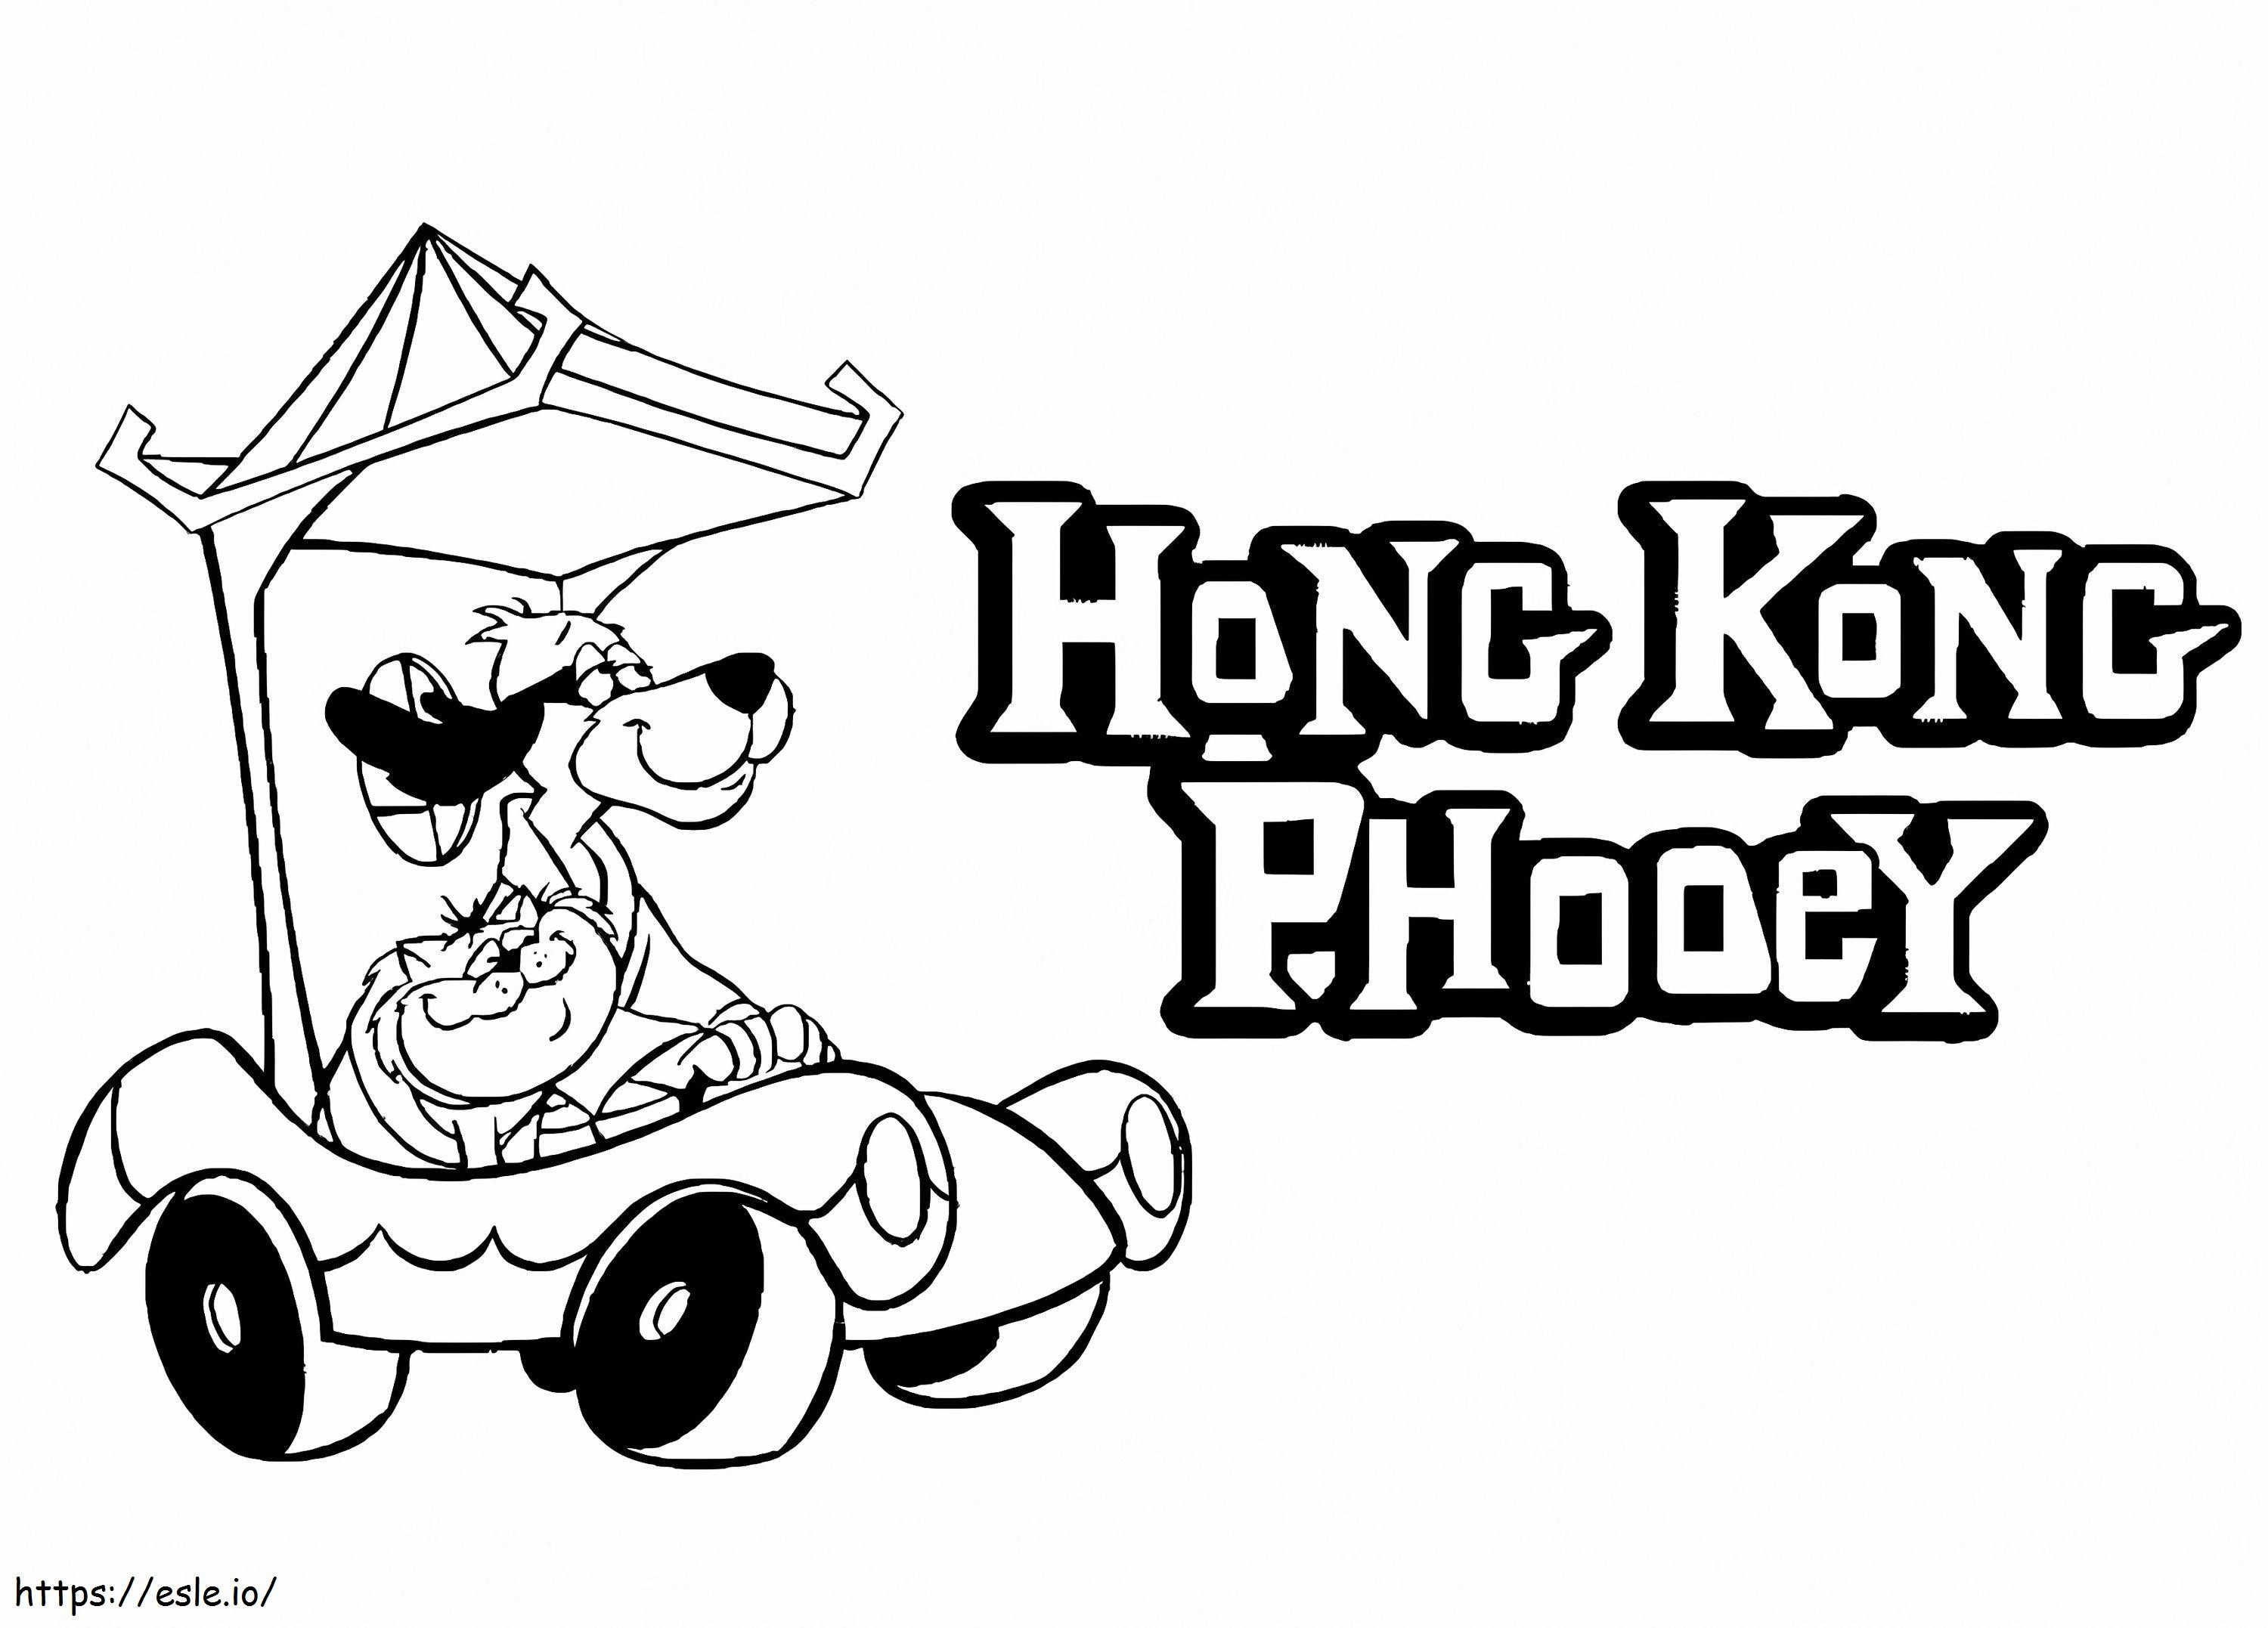 Miejsce z Hongkongiem Phooey kolorowanka